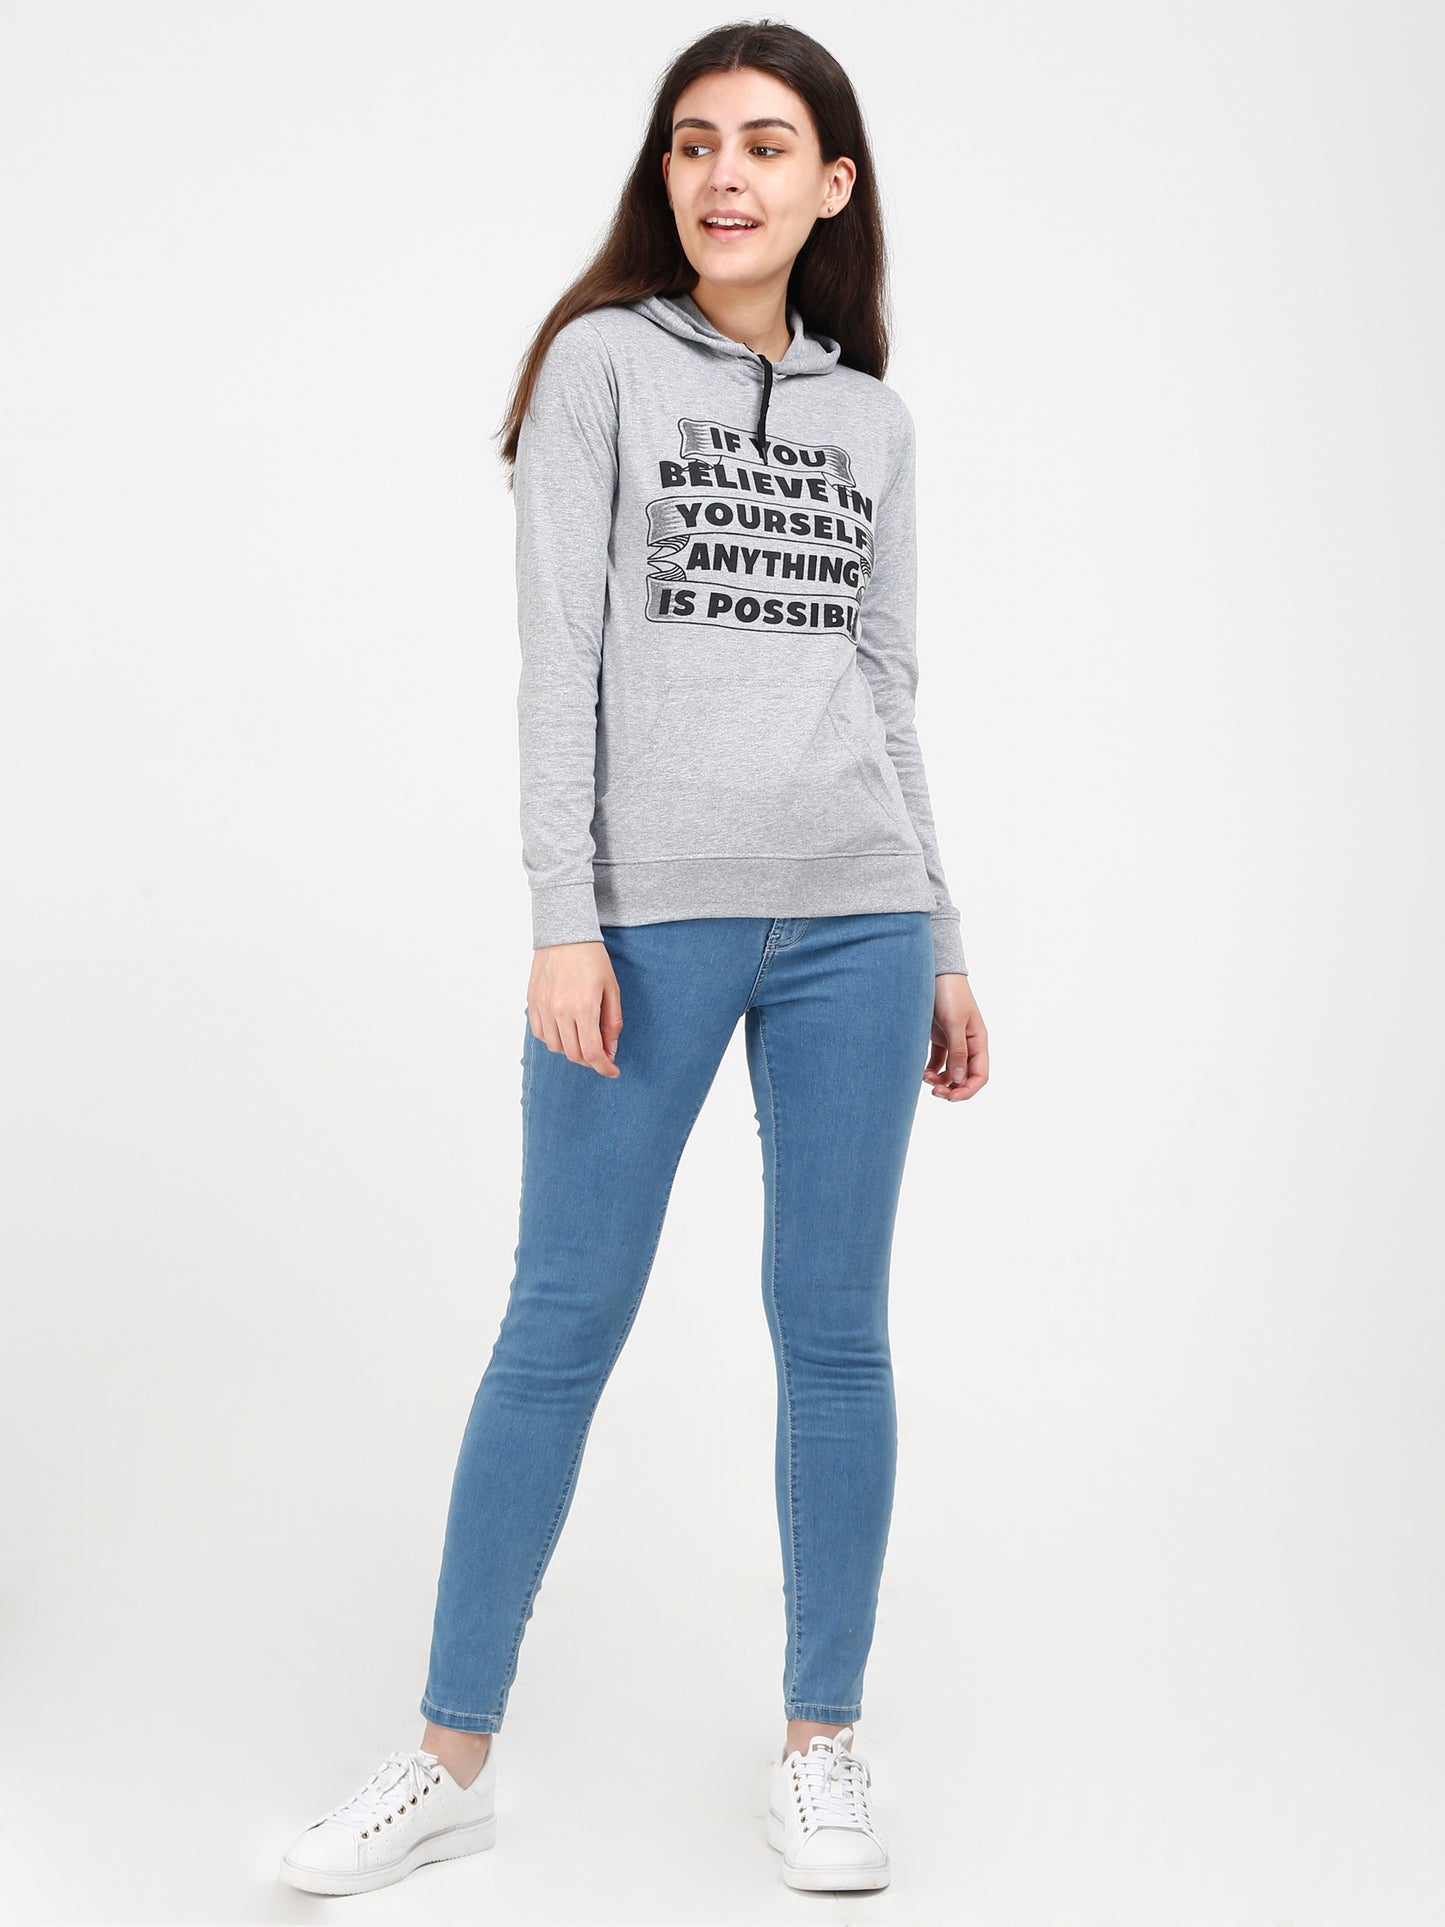 Women's Cotton Printed Full Sleeve Grey Melange Color Sweatshirt/Hoodies